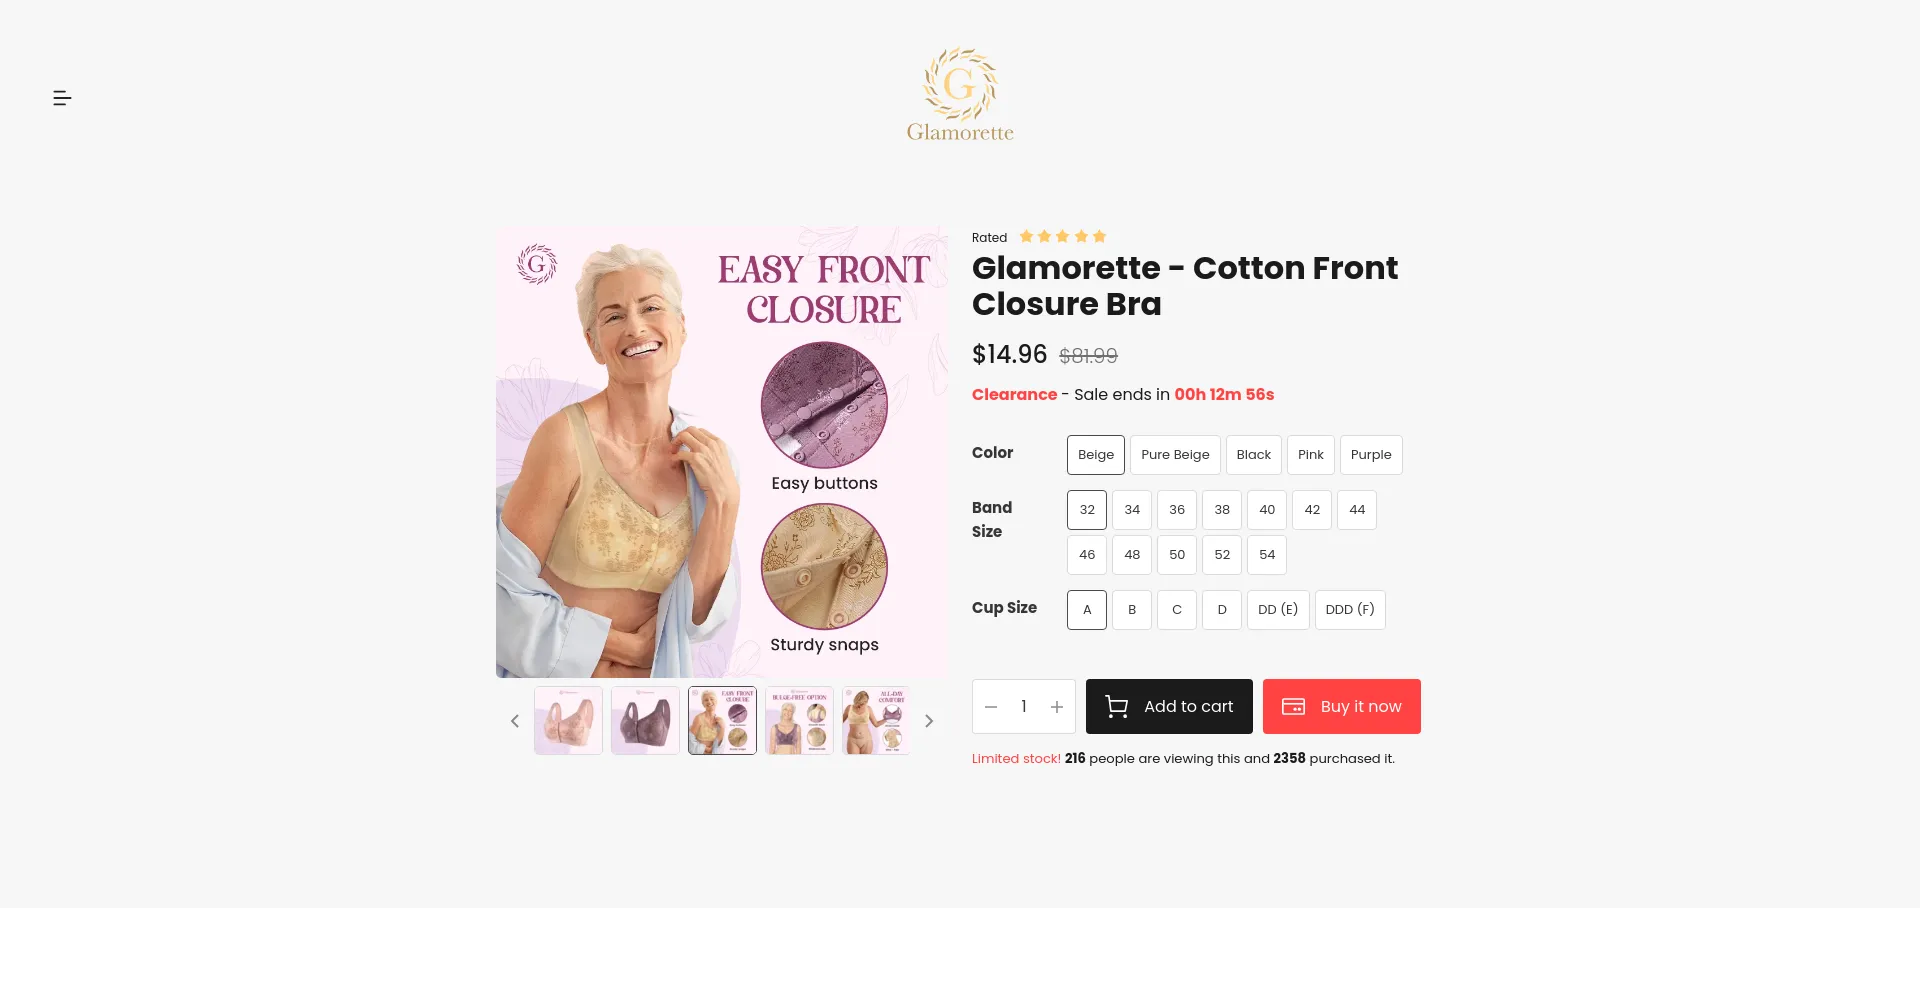 Glamorette - Cotton Front Closure Bra